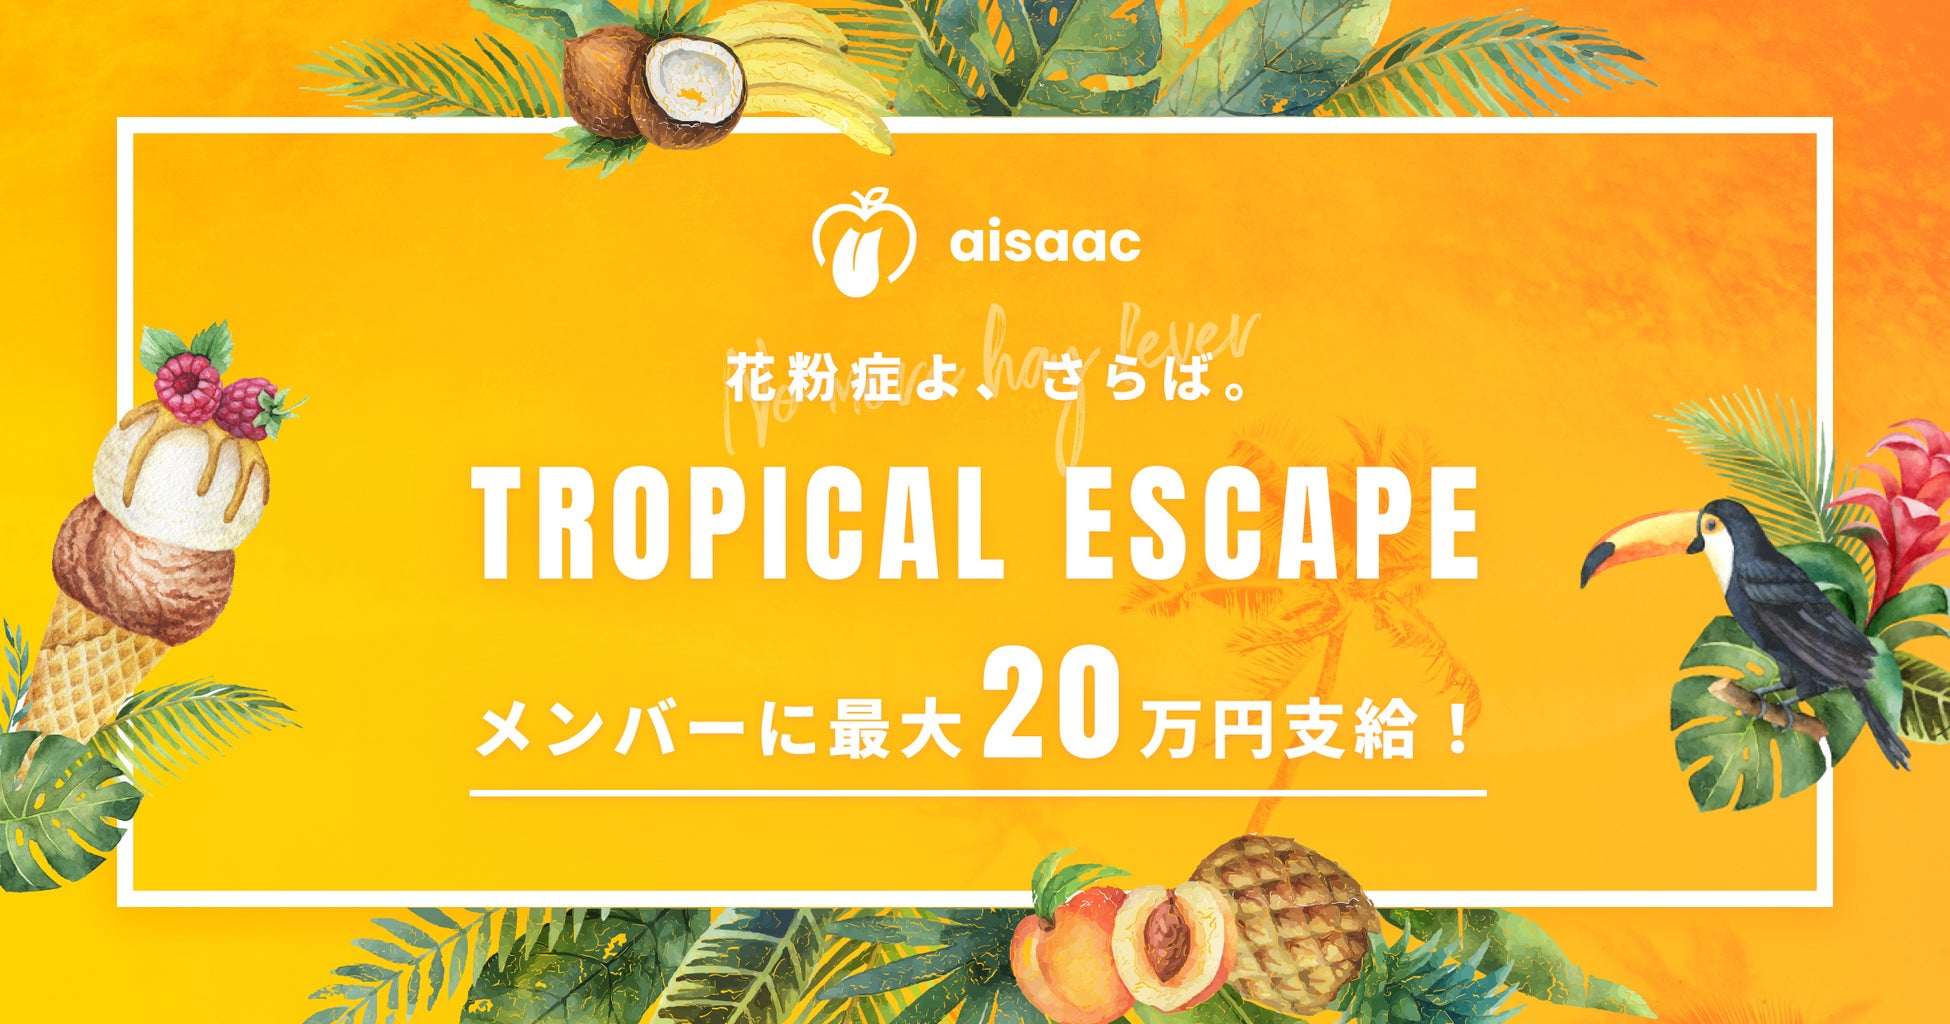 ウェブサービスの企画・運営手がけるアイザック、花粉のない地域での宿泊費を最大20万円補助する「Tropical Escape」を導入